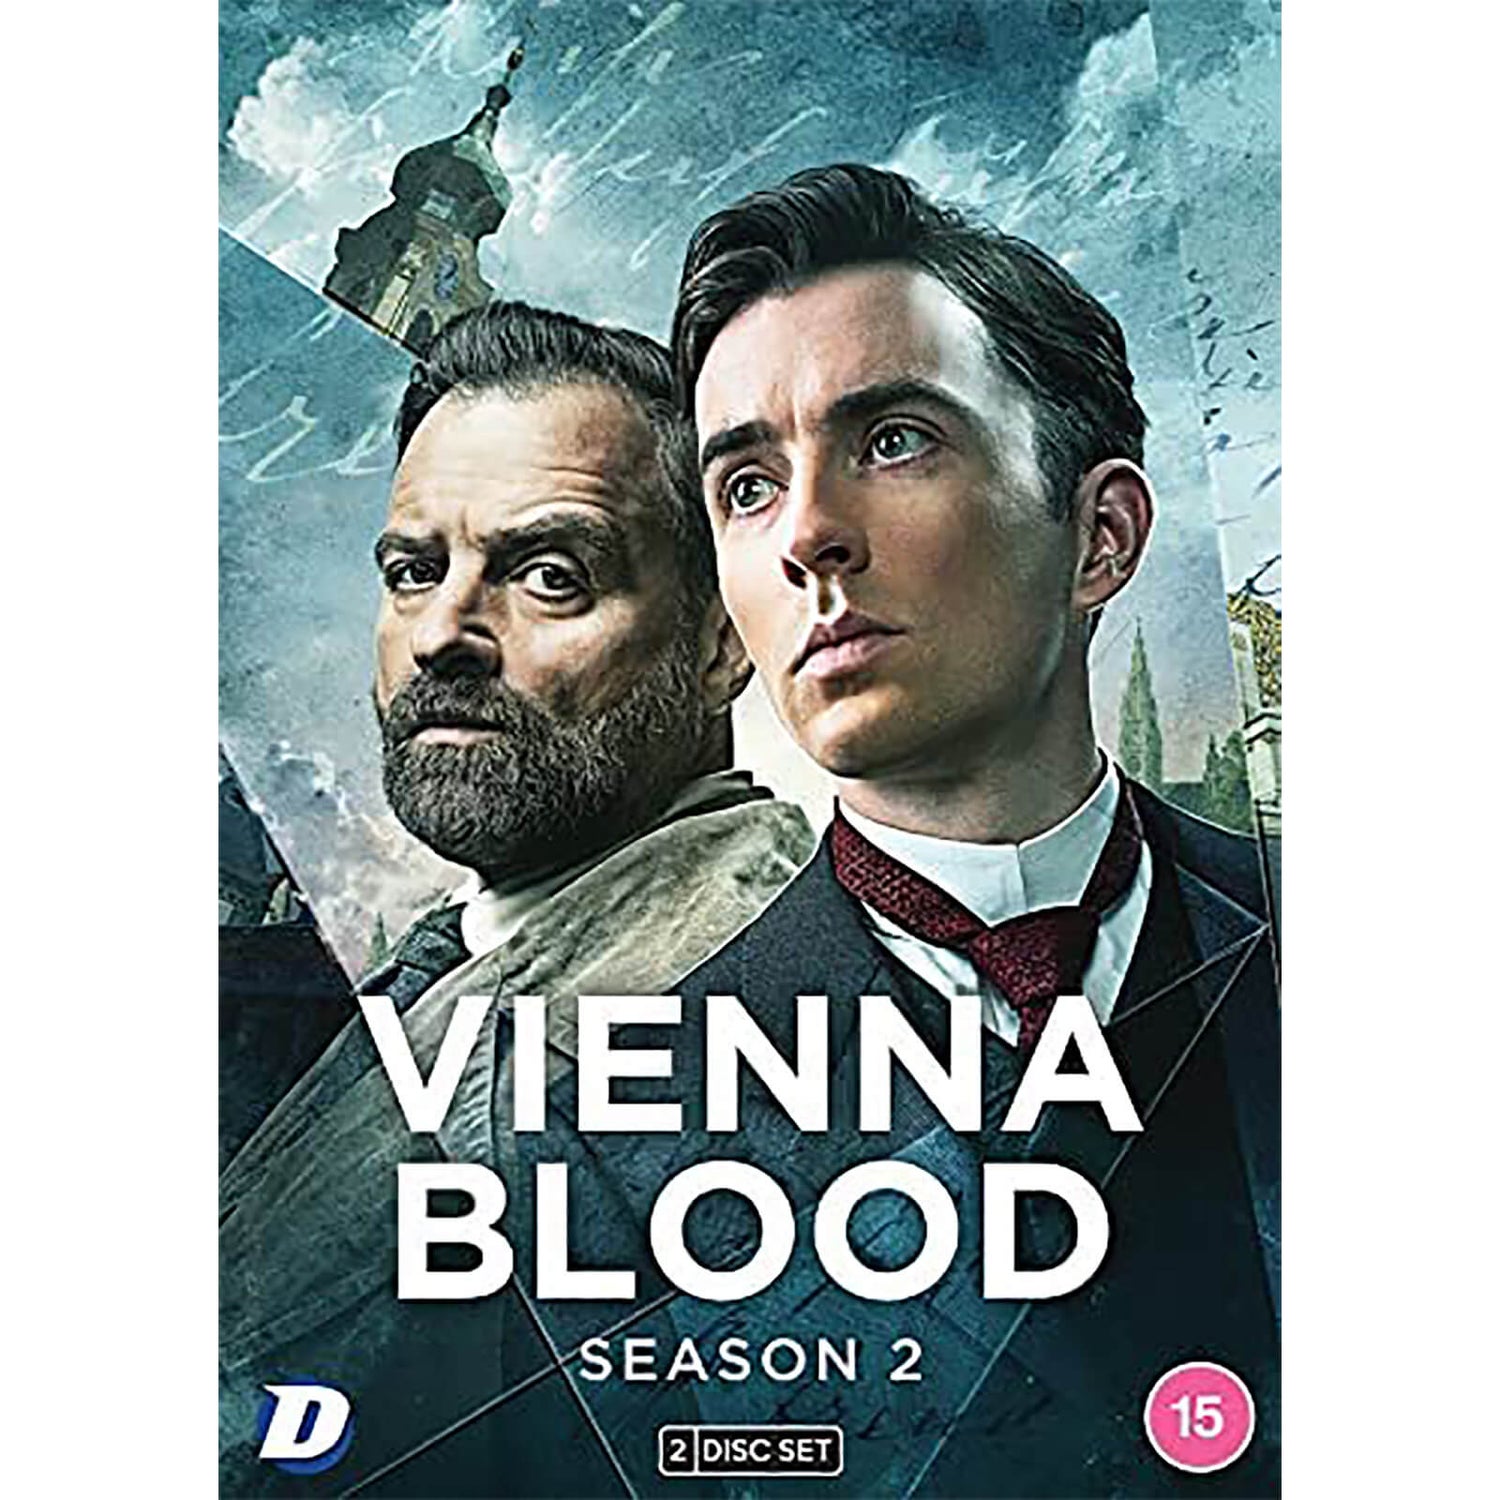 Vienna Blood: Series 2